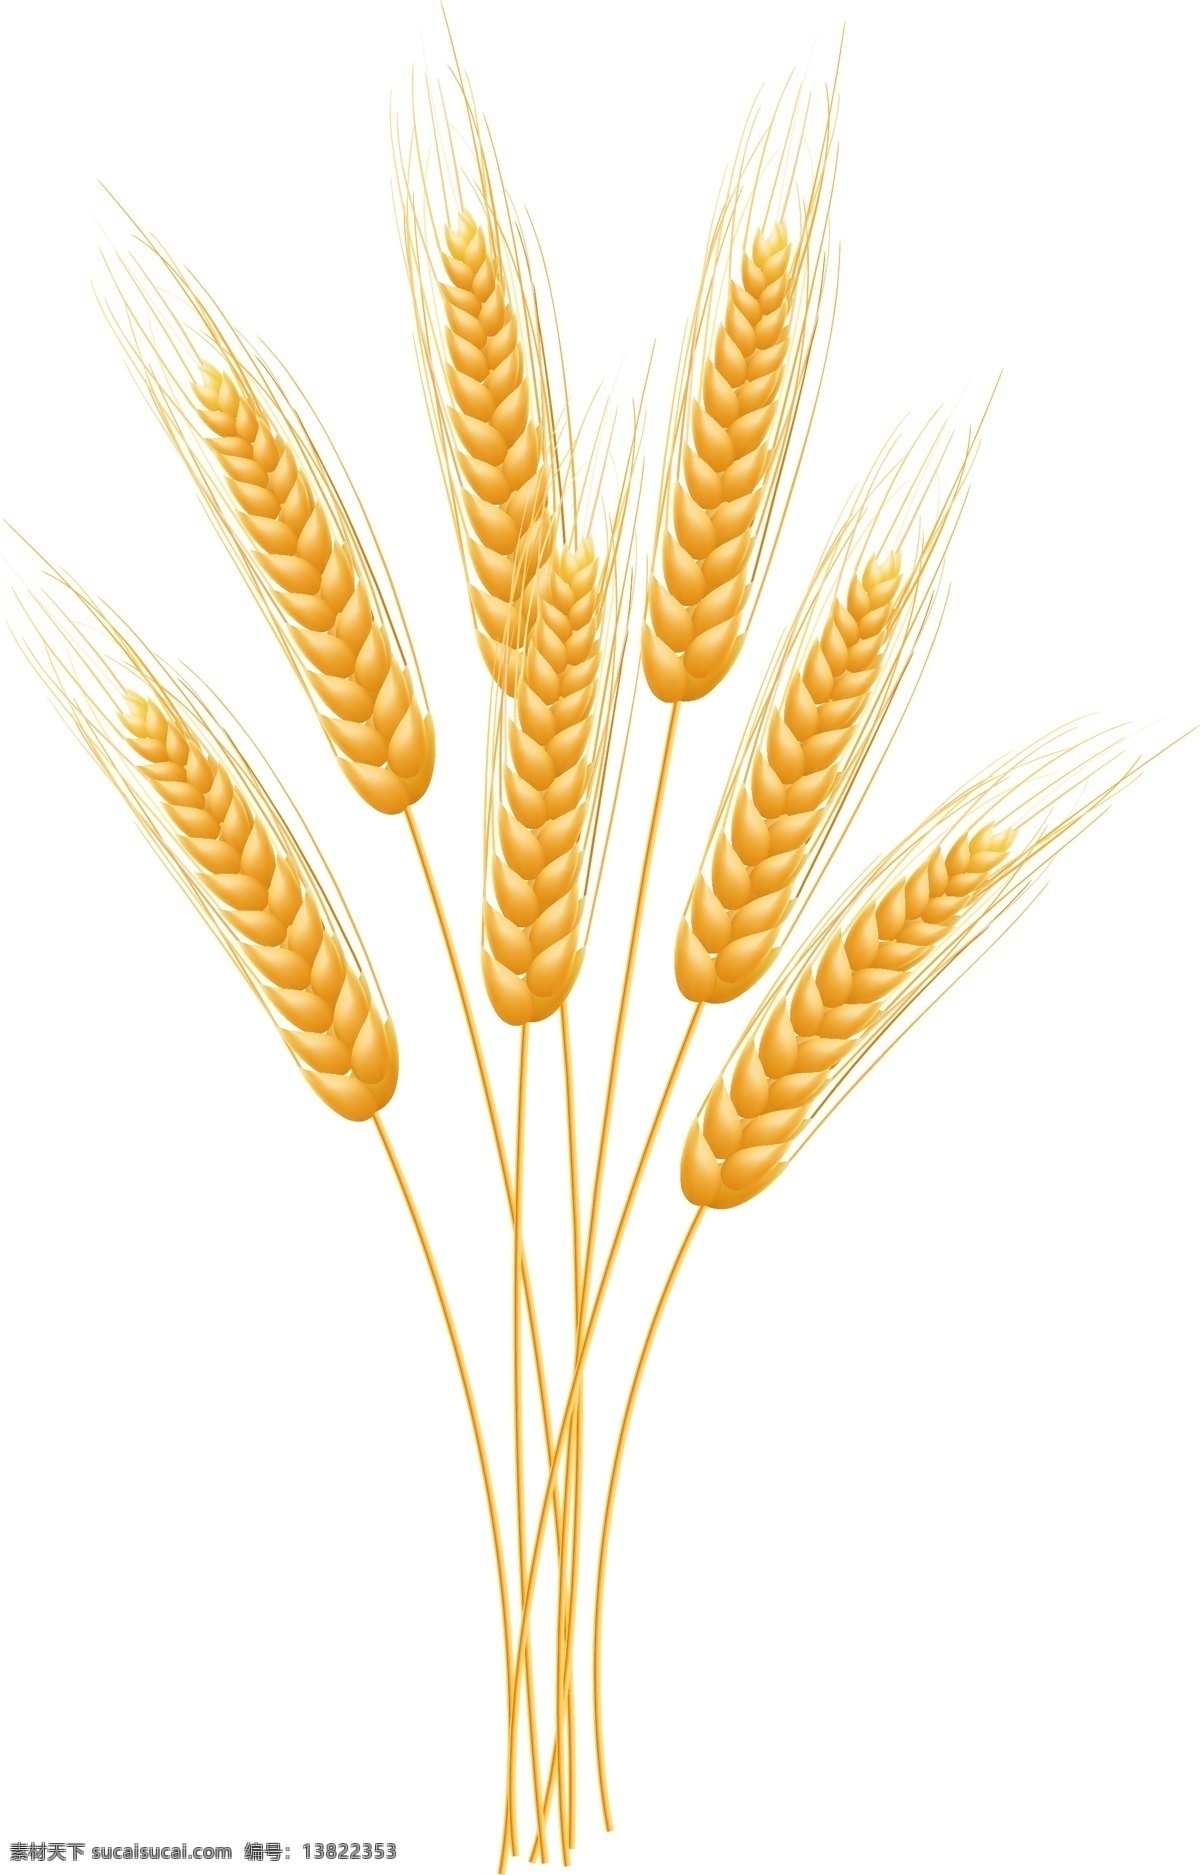 小麦 相关 图案 矢量 背景 装饰 矢量素材 装饰图案 设计元素